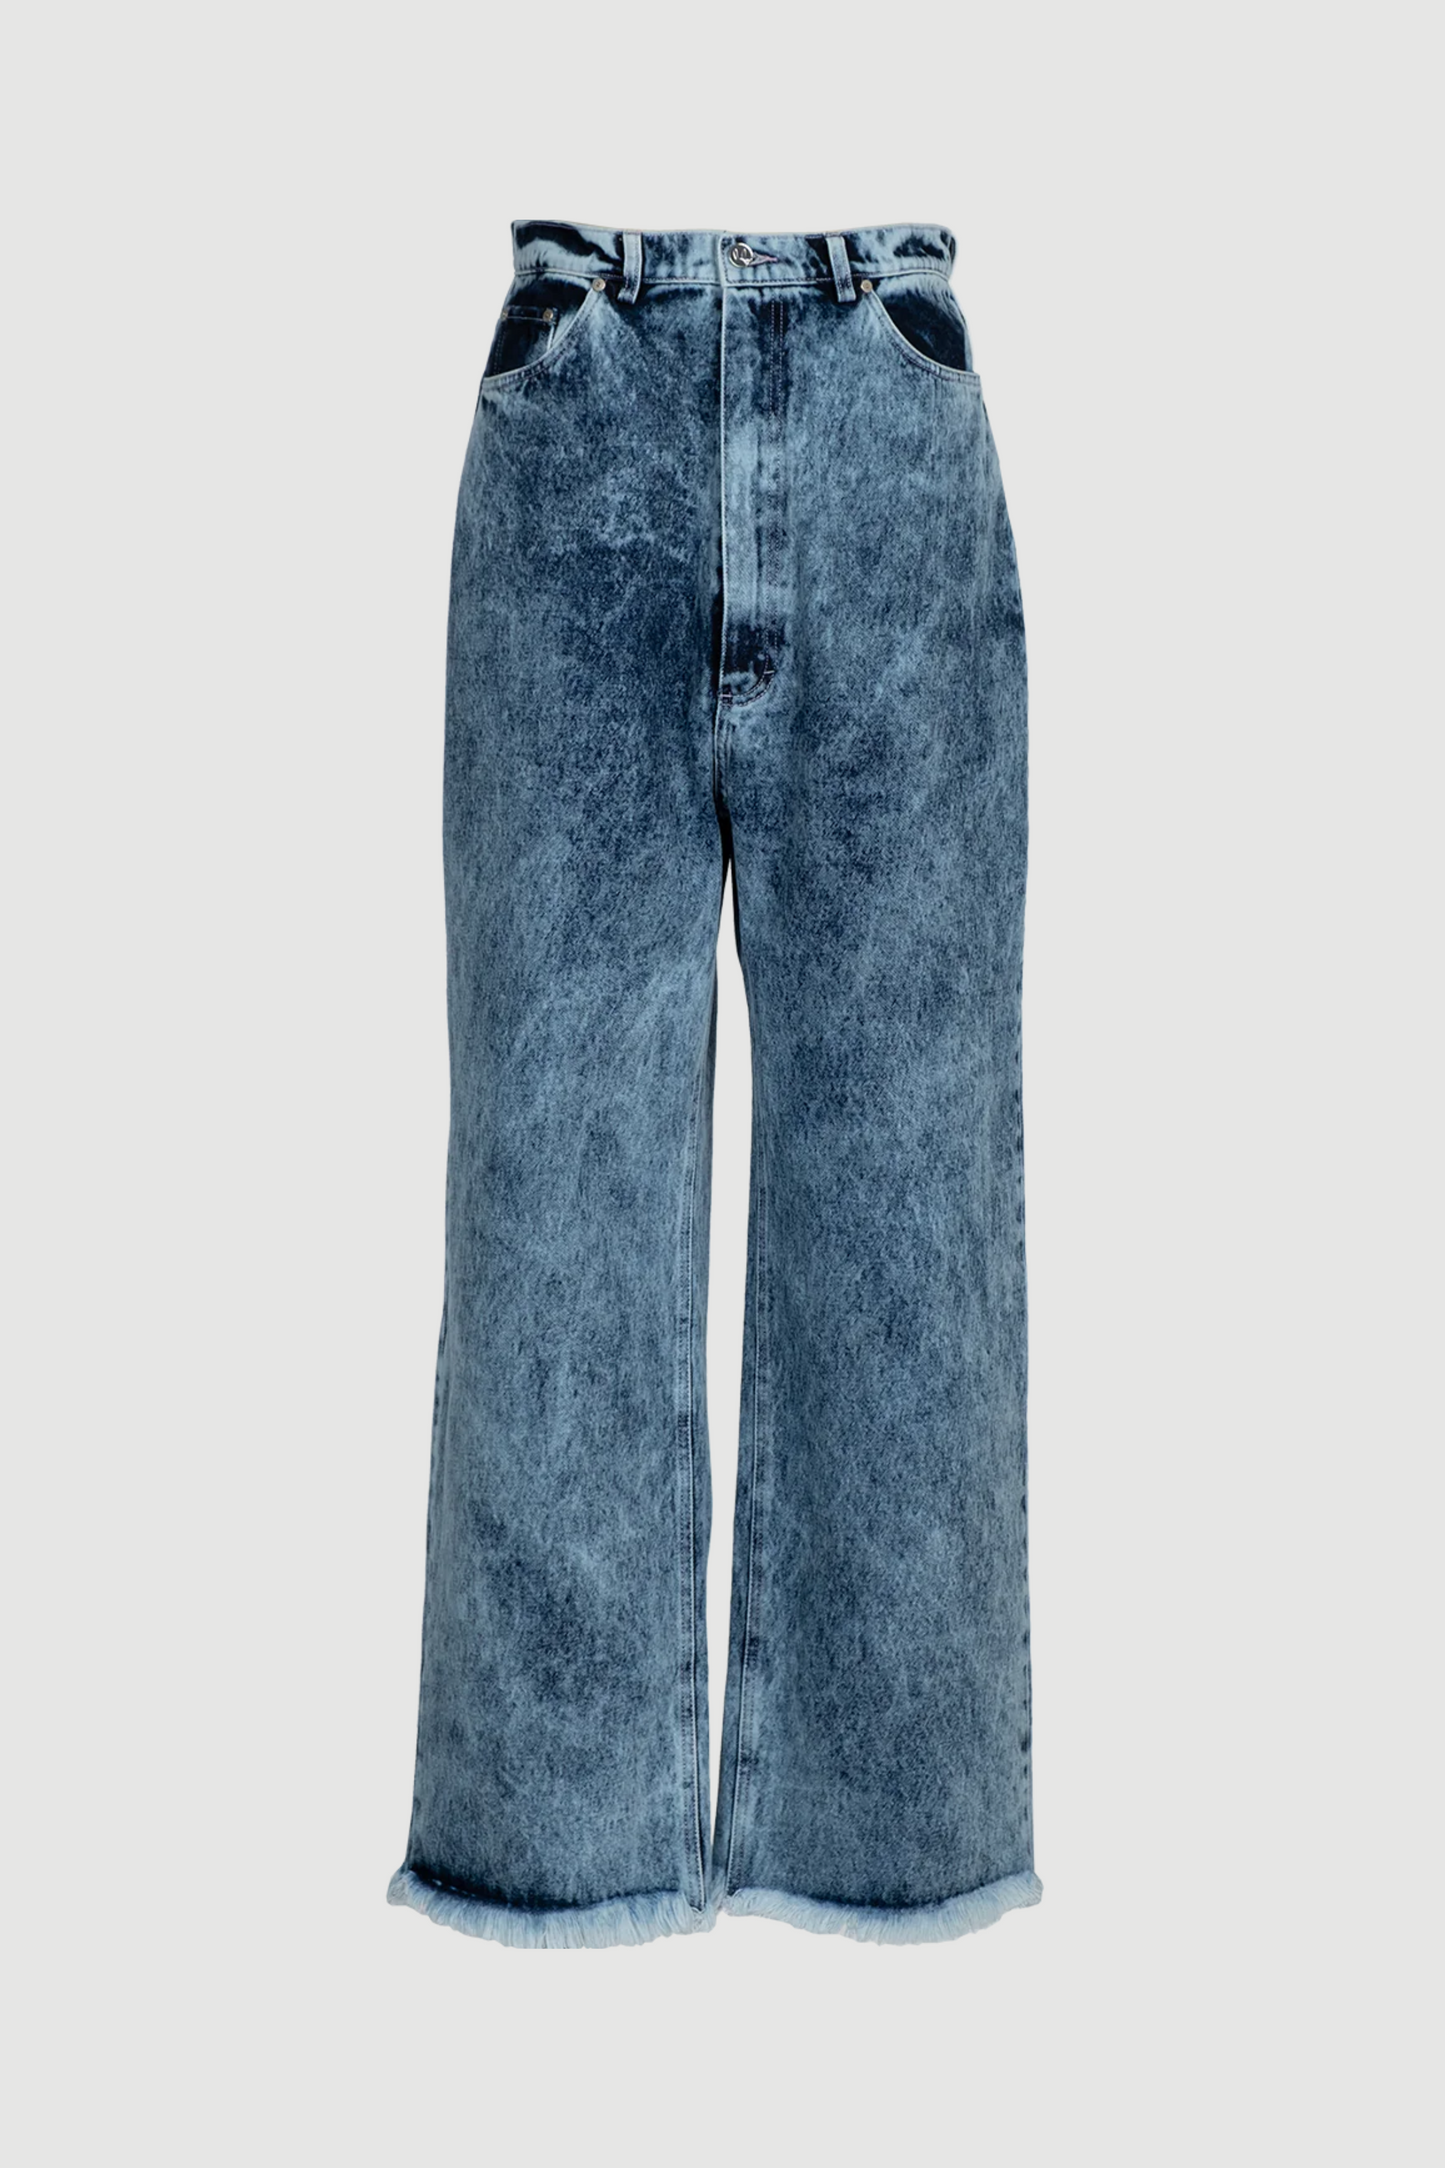 Pixel Heart Jeans